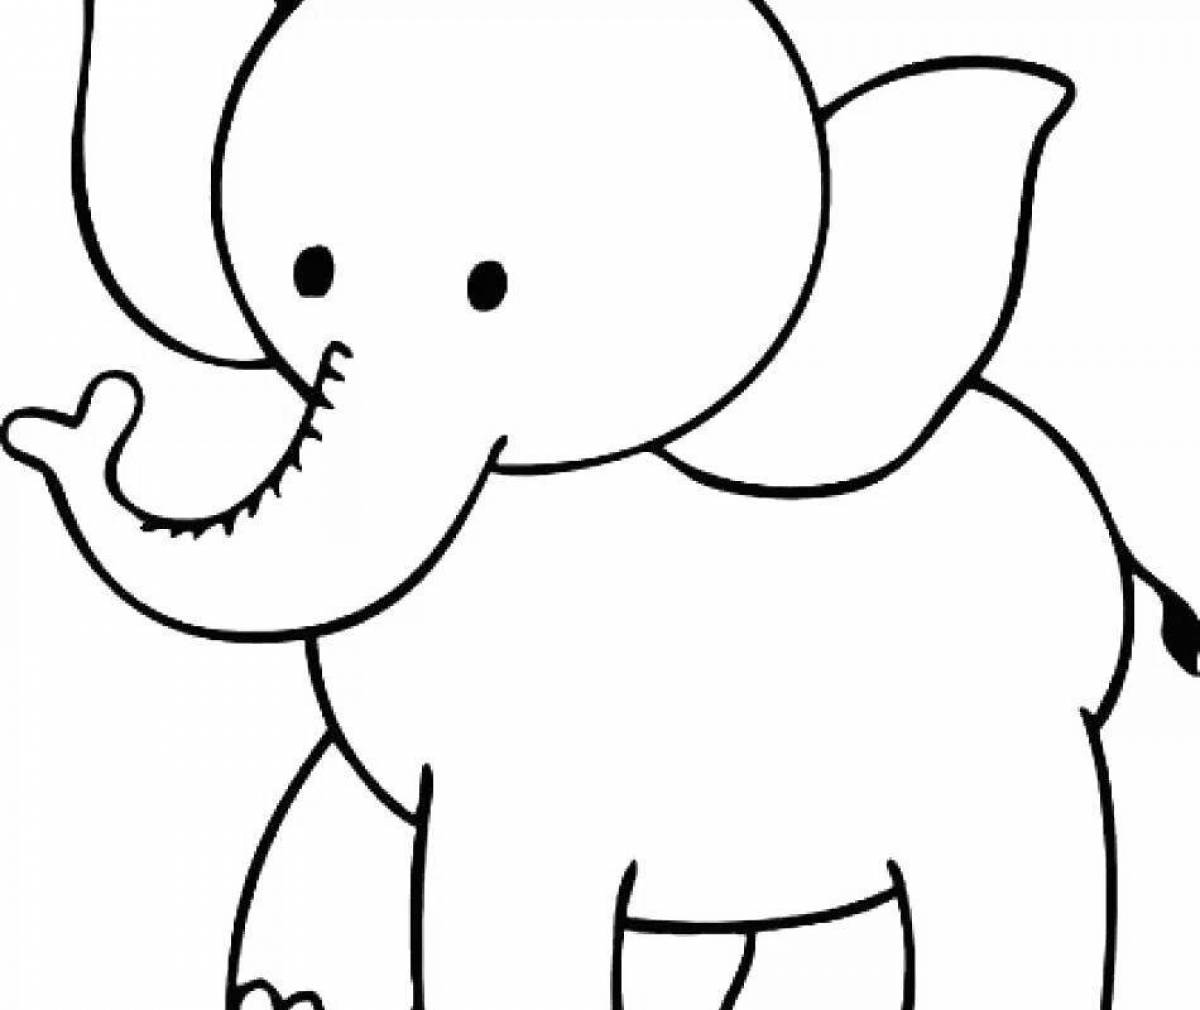 Великолепная раскраска слонов для детей